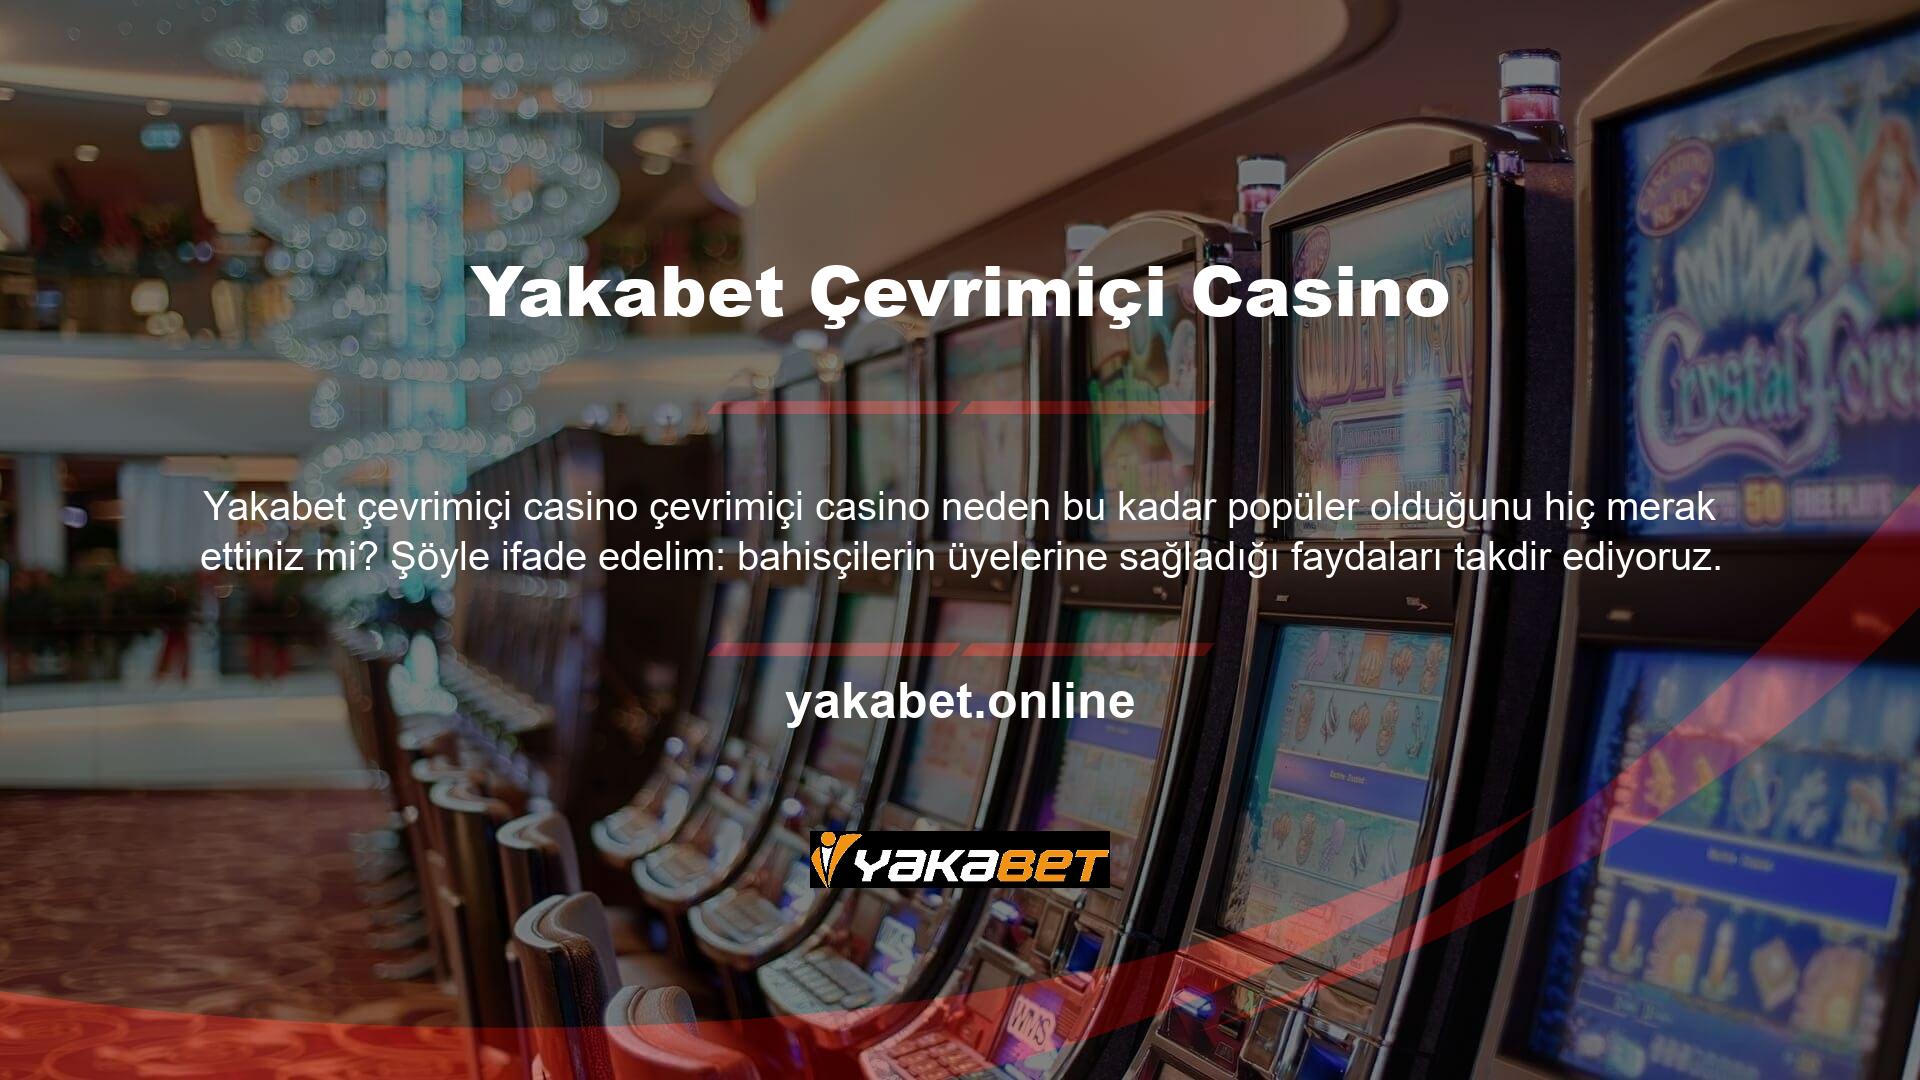 Casino oyunları uzun yıllardır geniş bir kitle için bir eğlence türü olmuştur ve internetin gelişmesiyle birlikte online platformlarda ilgi görmeye başlamıştır